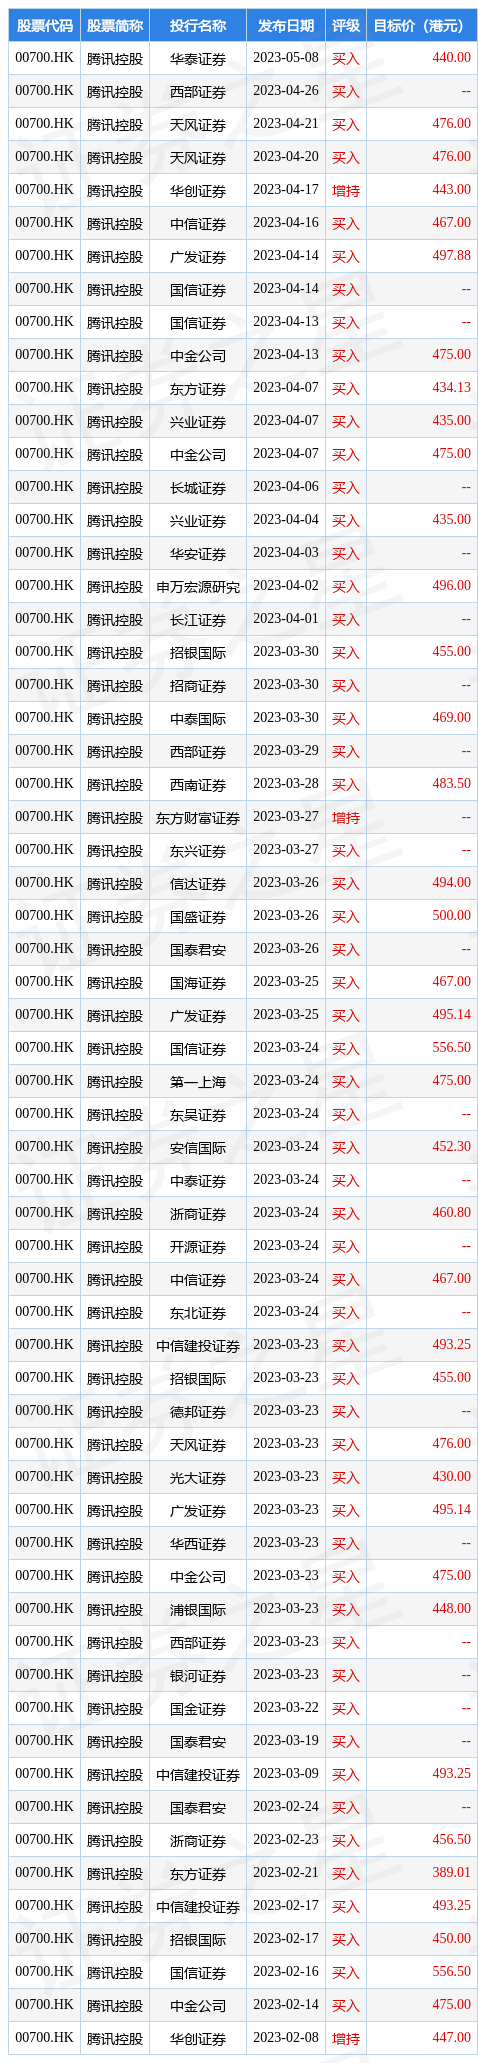 天风证券发布研究报告称，维持腾讯控股(00700.HK)“买入”评级，目标价476港元